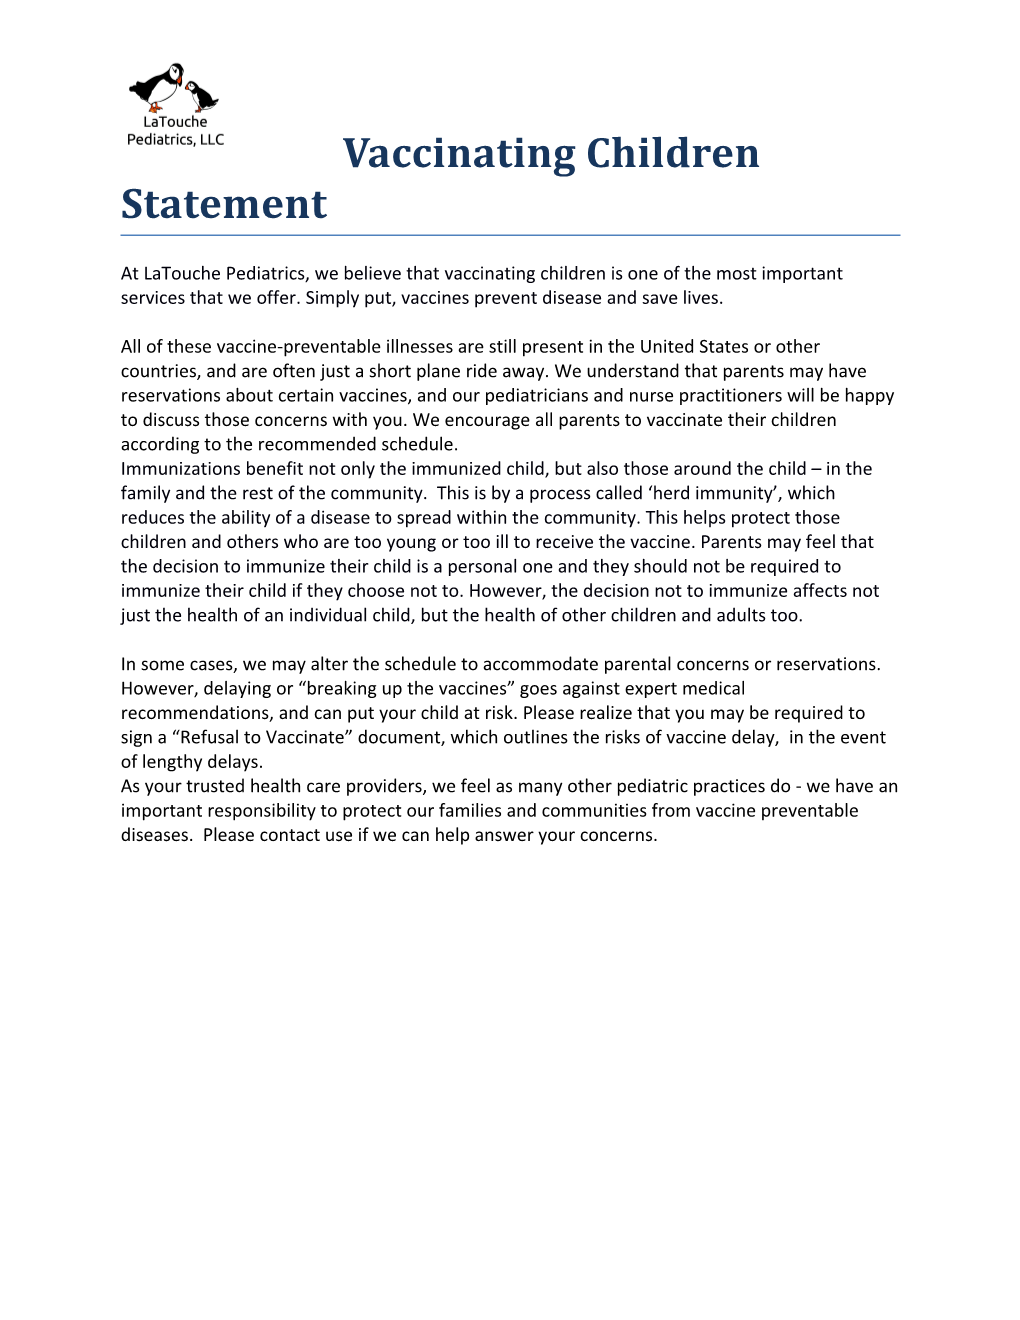 Vaccinating Children Statement